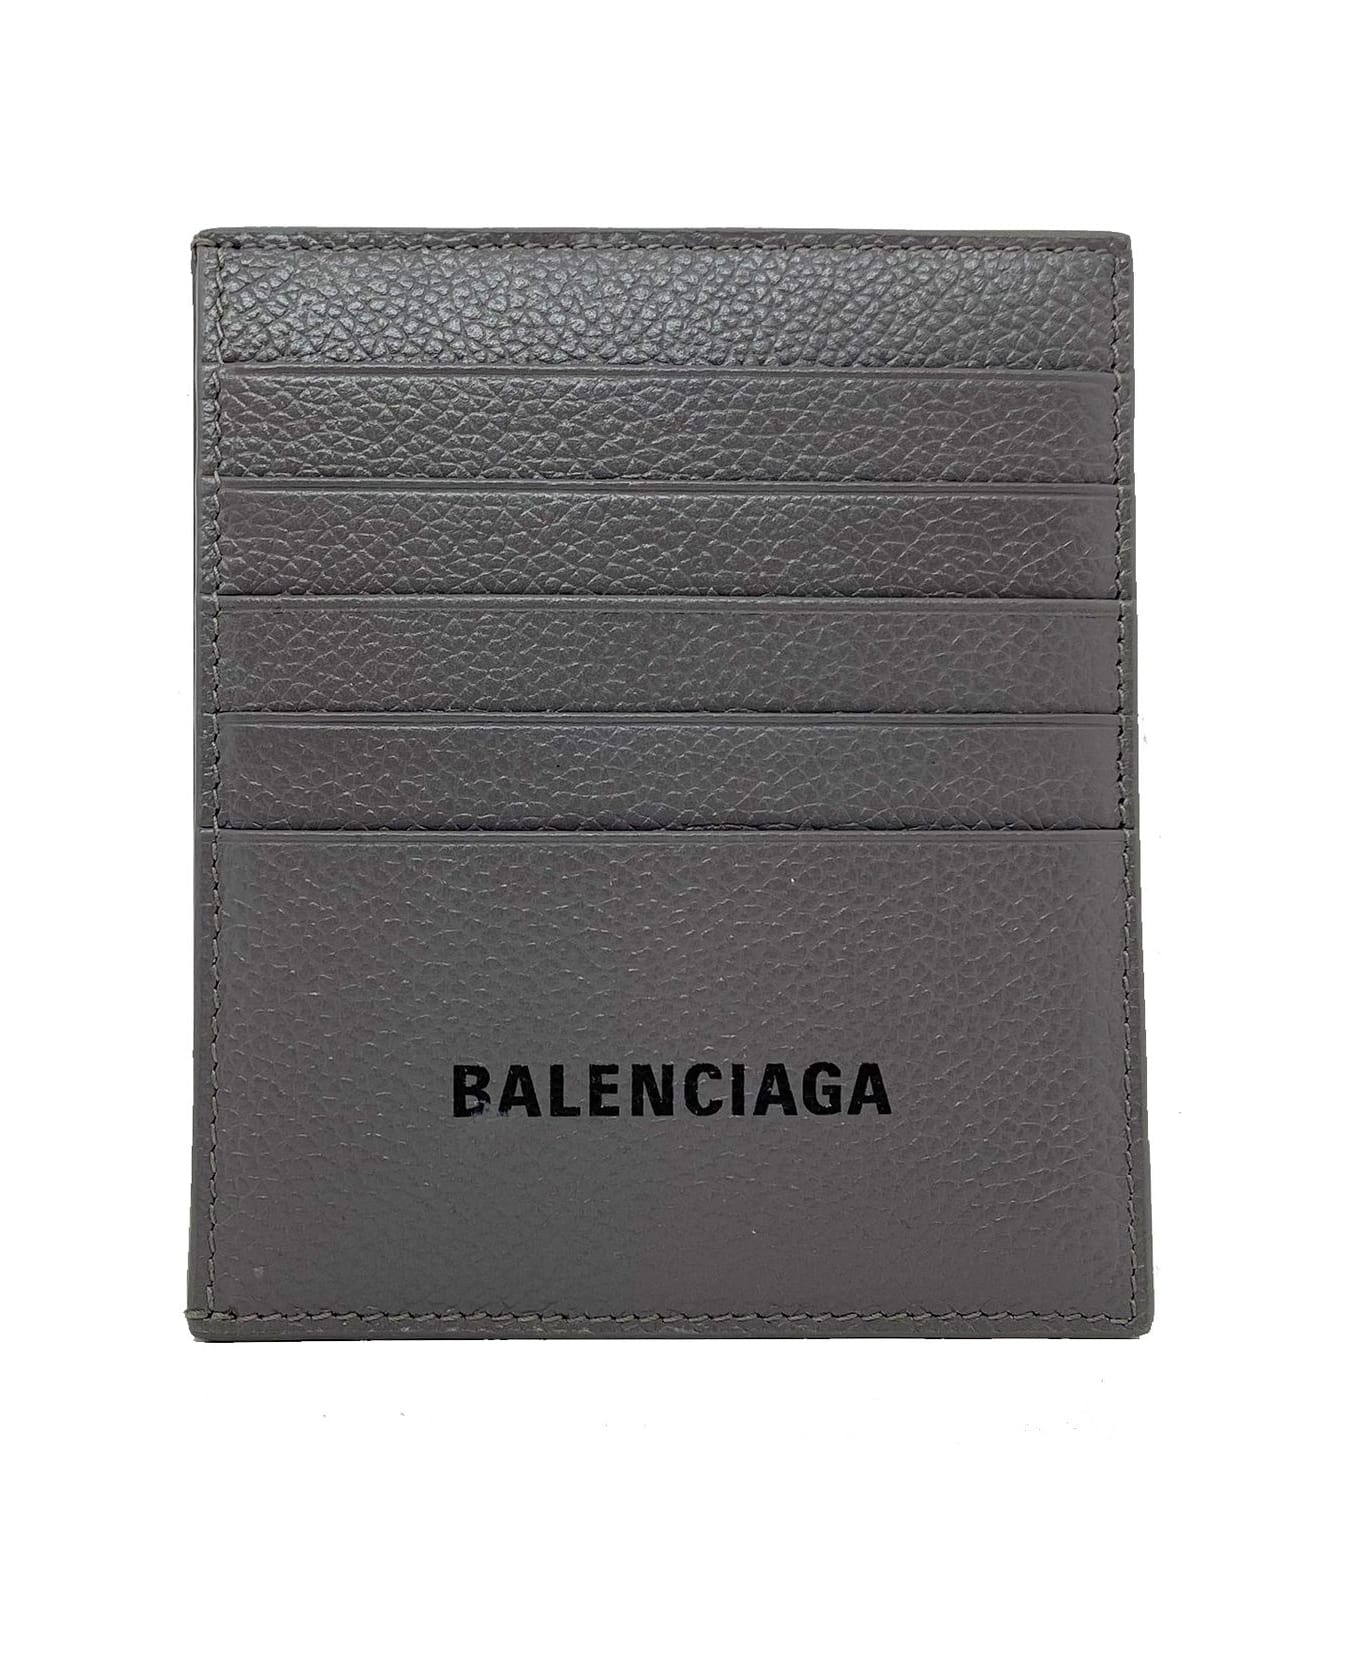 Balenciaga Logo Card Holder - Gray